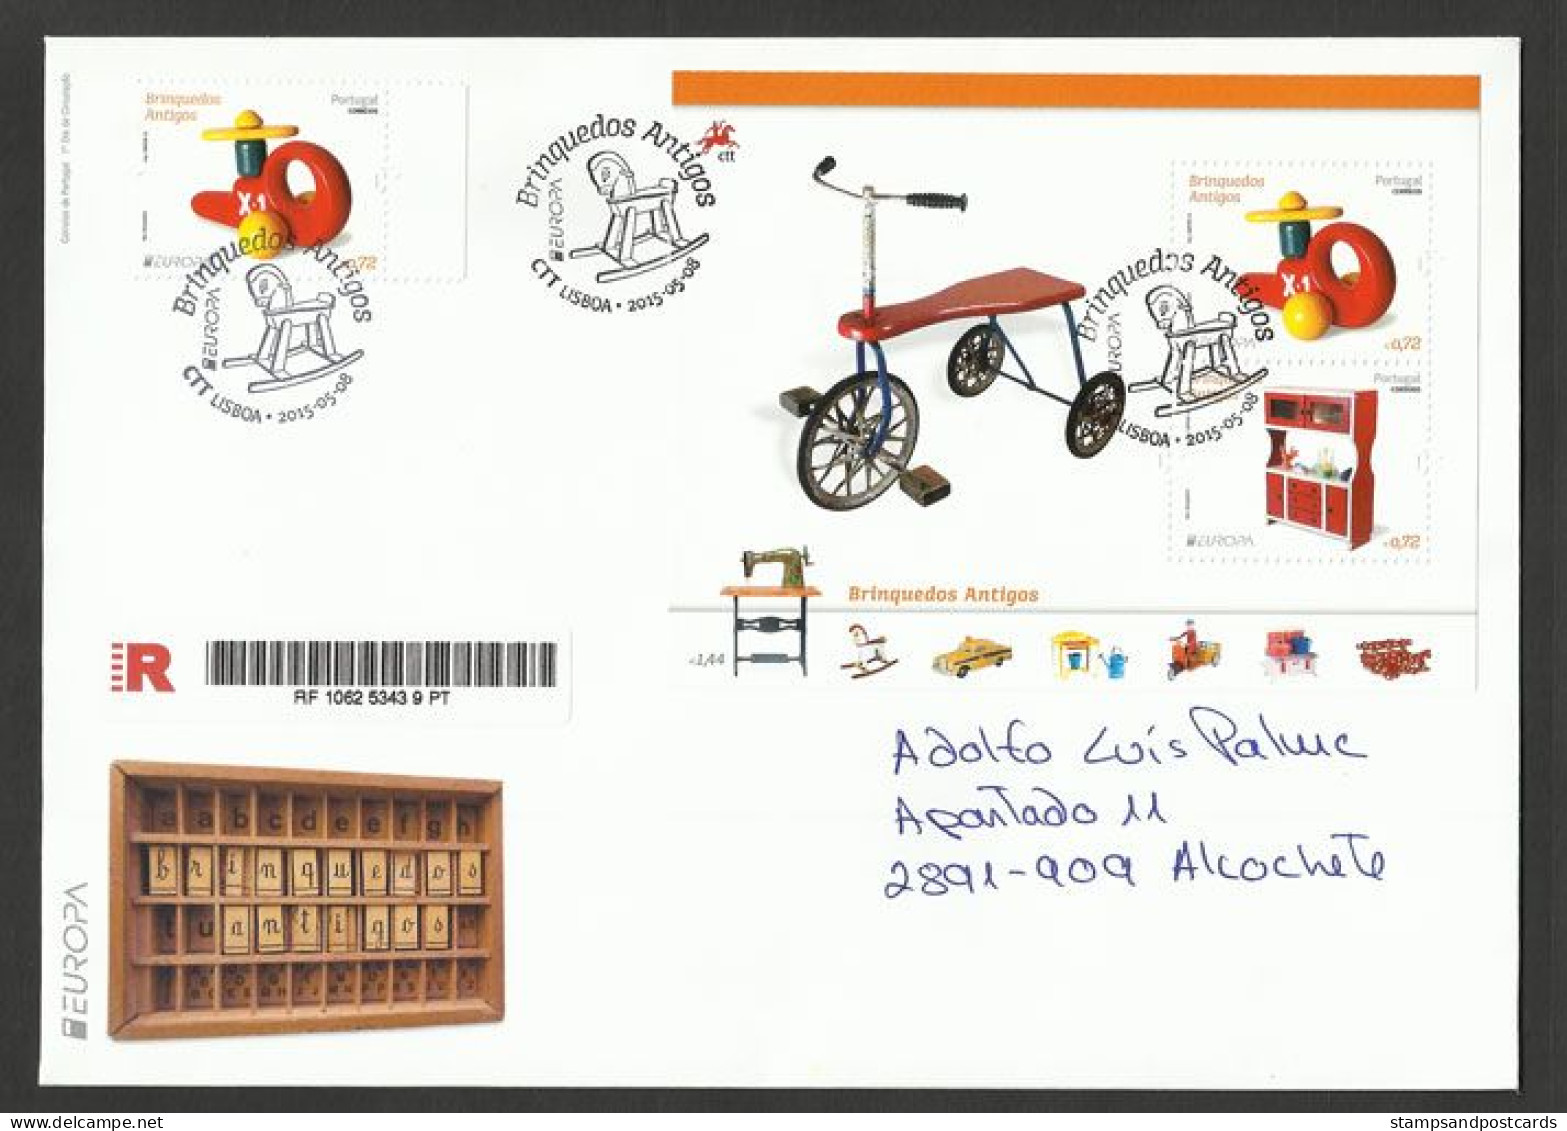 Portugal Europa CEPT 2015 FDC Recommandée Avec Bloc Vieux Jouets Tricycle Souvenir Sheet Registered FDC Old Toys - 2015